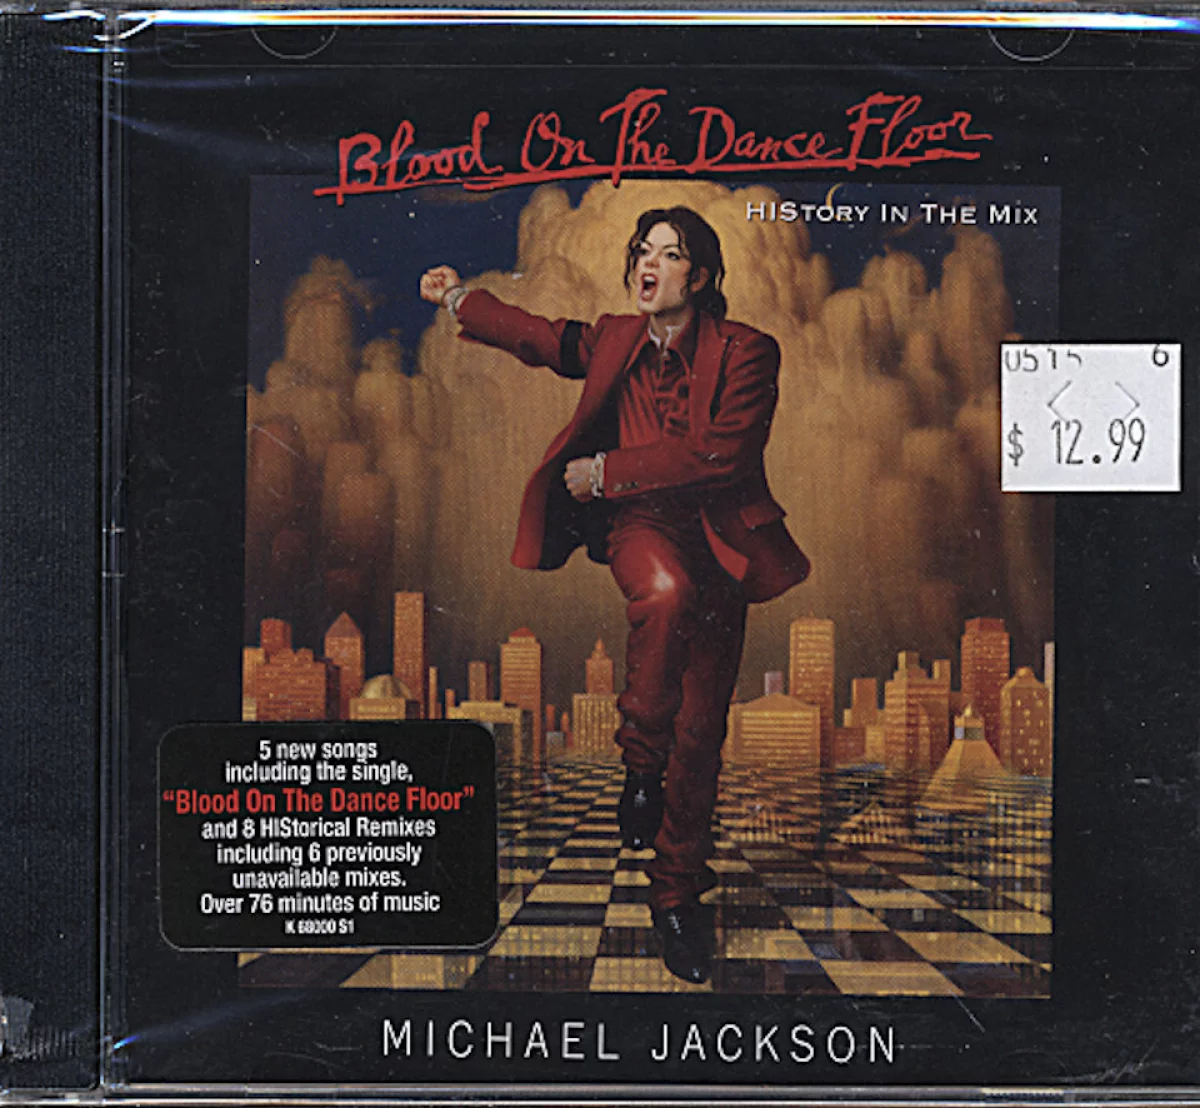 Michael Jackson CD, 1997 at Wolfgang's